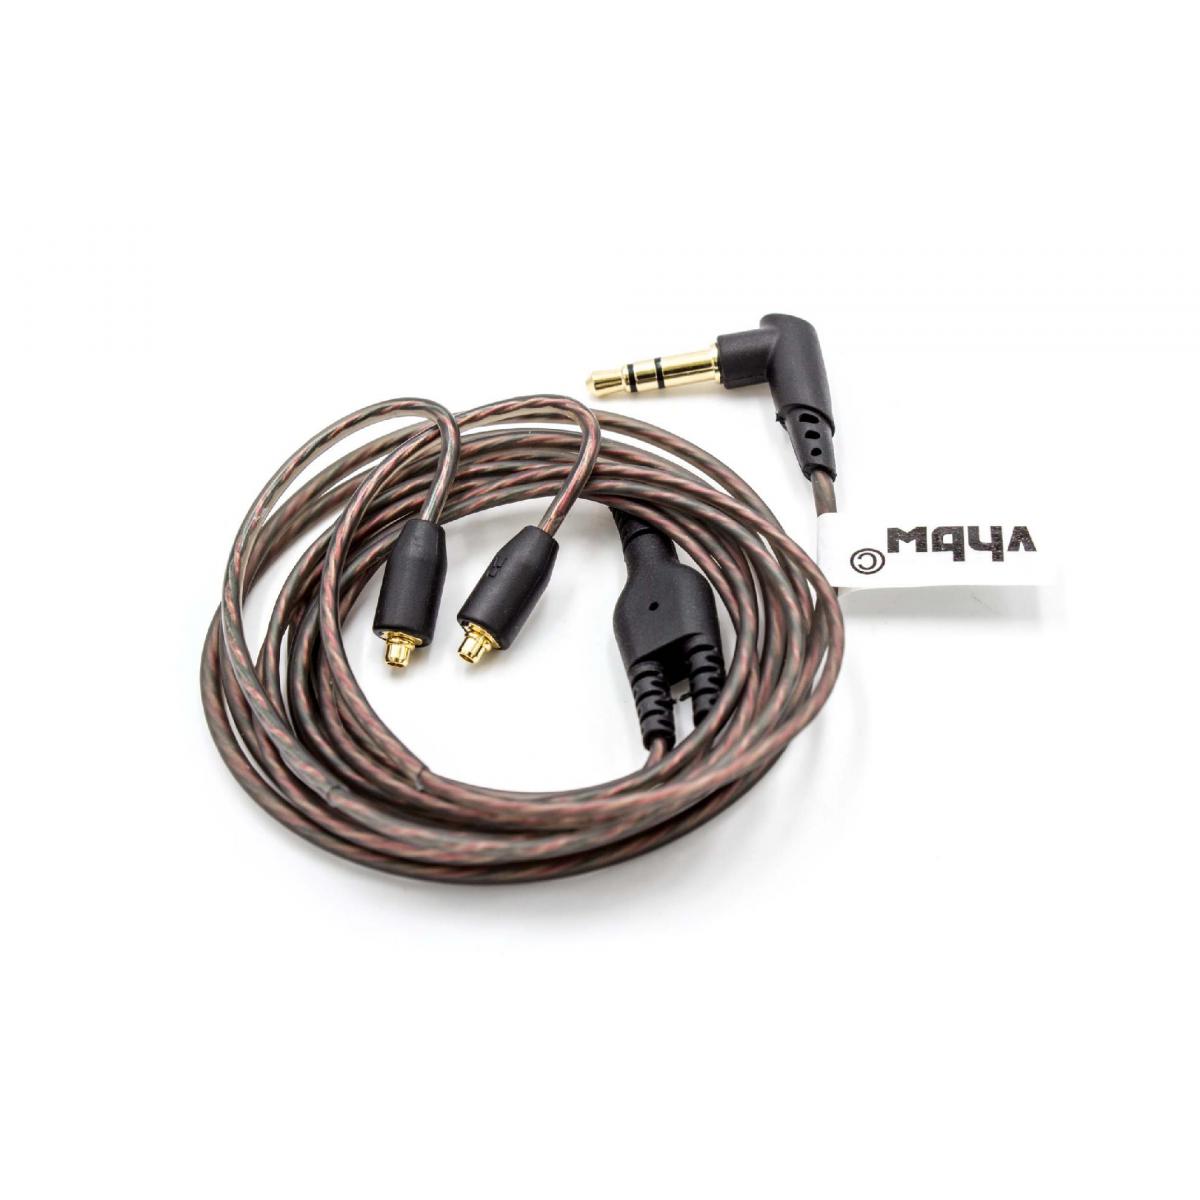 Vhbw - vhbw Câble audio AUX vers prise jack 3,5mm remplace Shure EAC64 pour casque d'écoute, 120cm - Alimentation modulaire